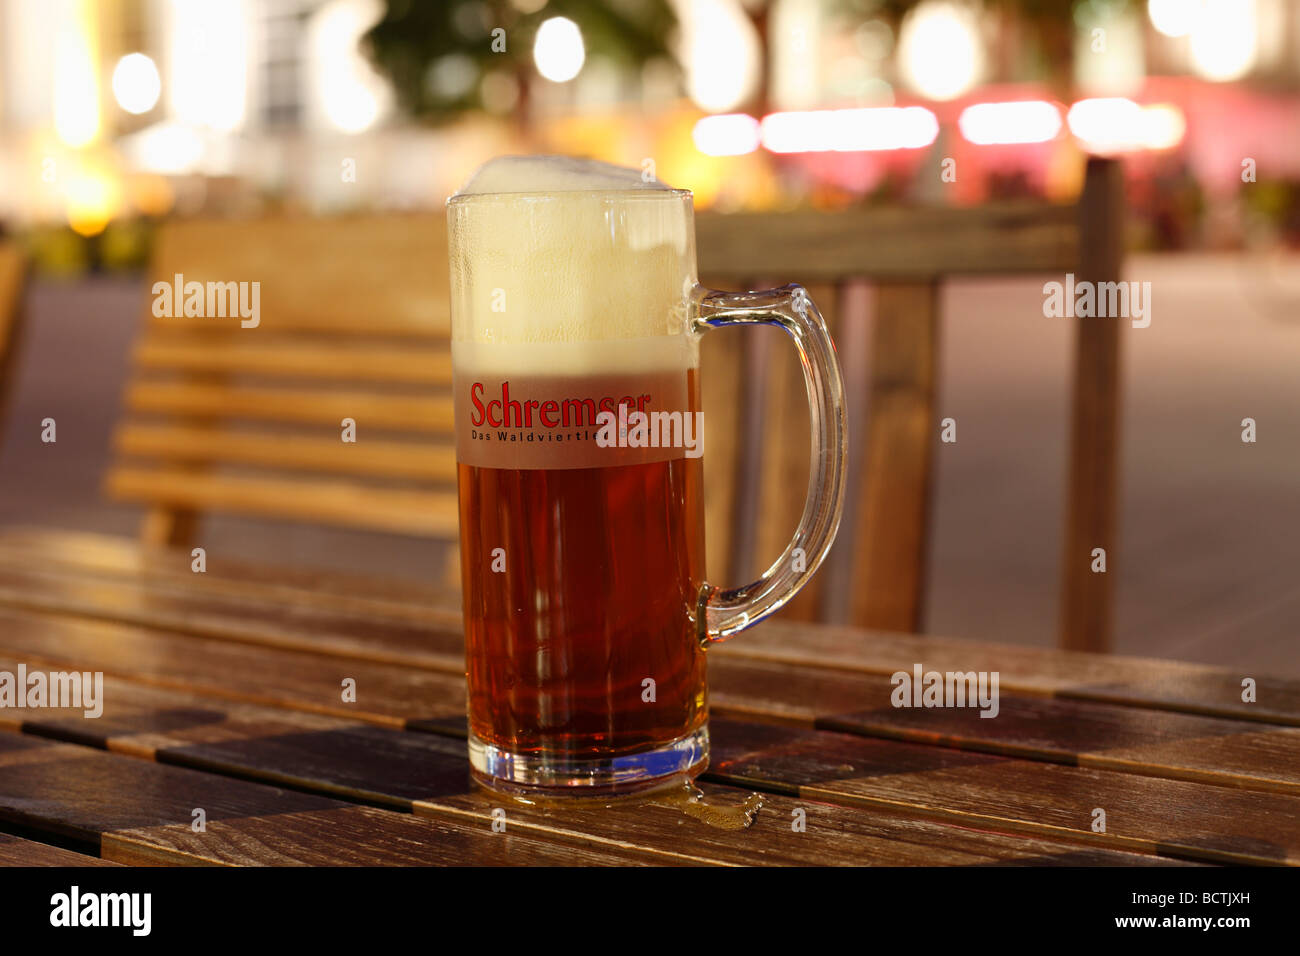 Schremser bière dans un verre de bière, Quartier des musées, Vienne, Autriche, Europe Banque D'Images